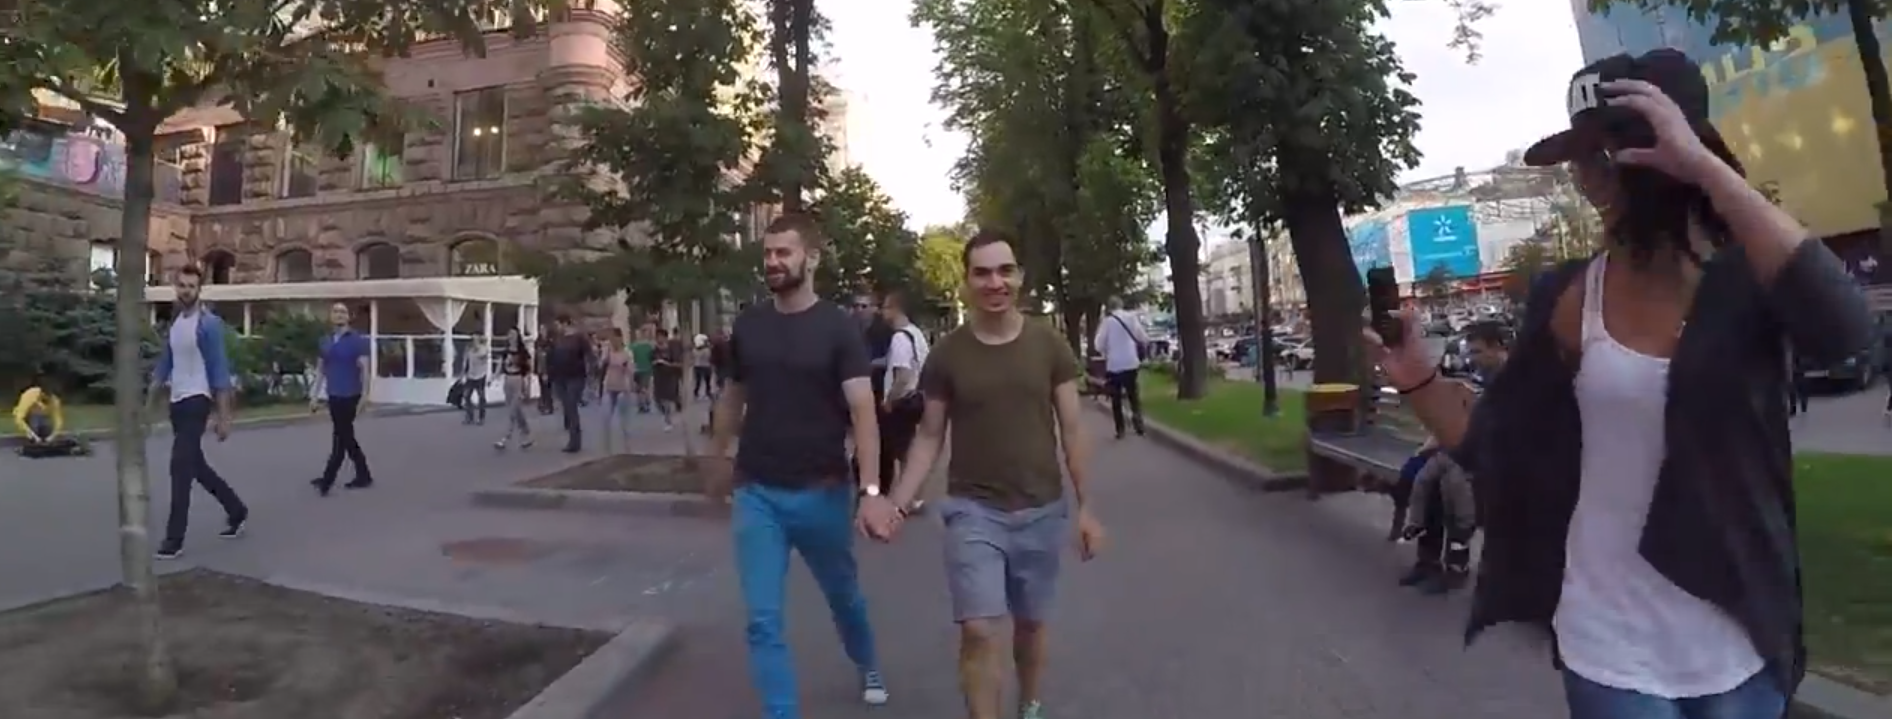 Brutal desenlace de un ‘paseo gay’ en Ucrania